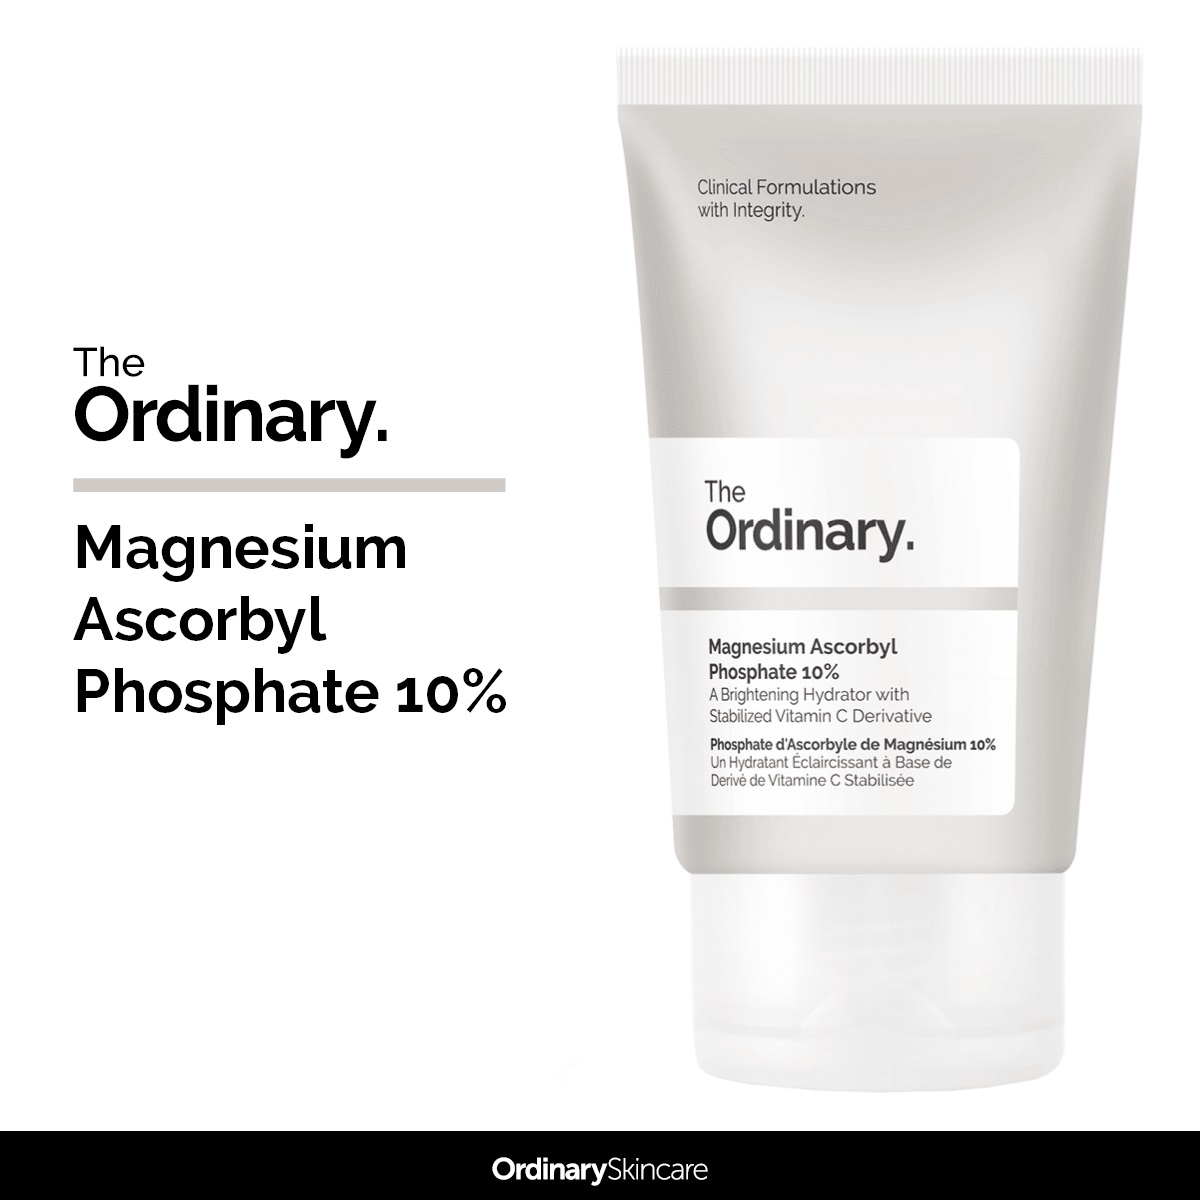 کرم مرطوب کننده و آبرسان منیزیم آسکوربیل فسفات اوردینری (آبرسان Magnesium Ascorbyl Phosphate 10% اوردینری) Ordinary